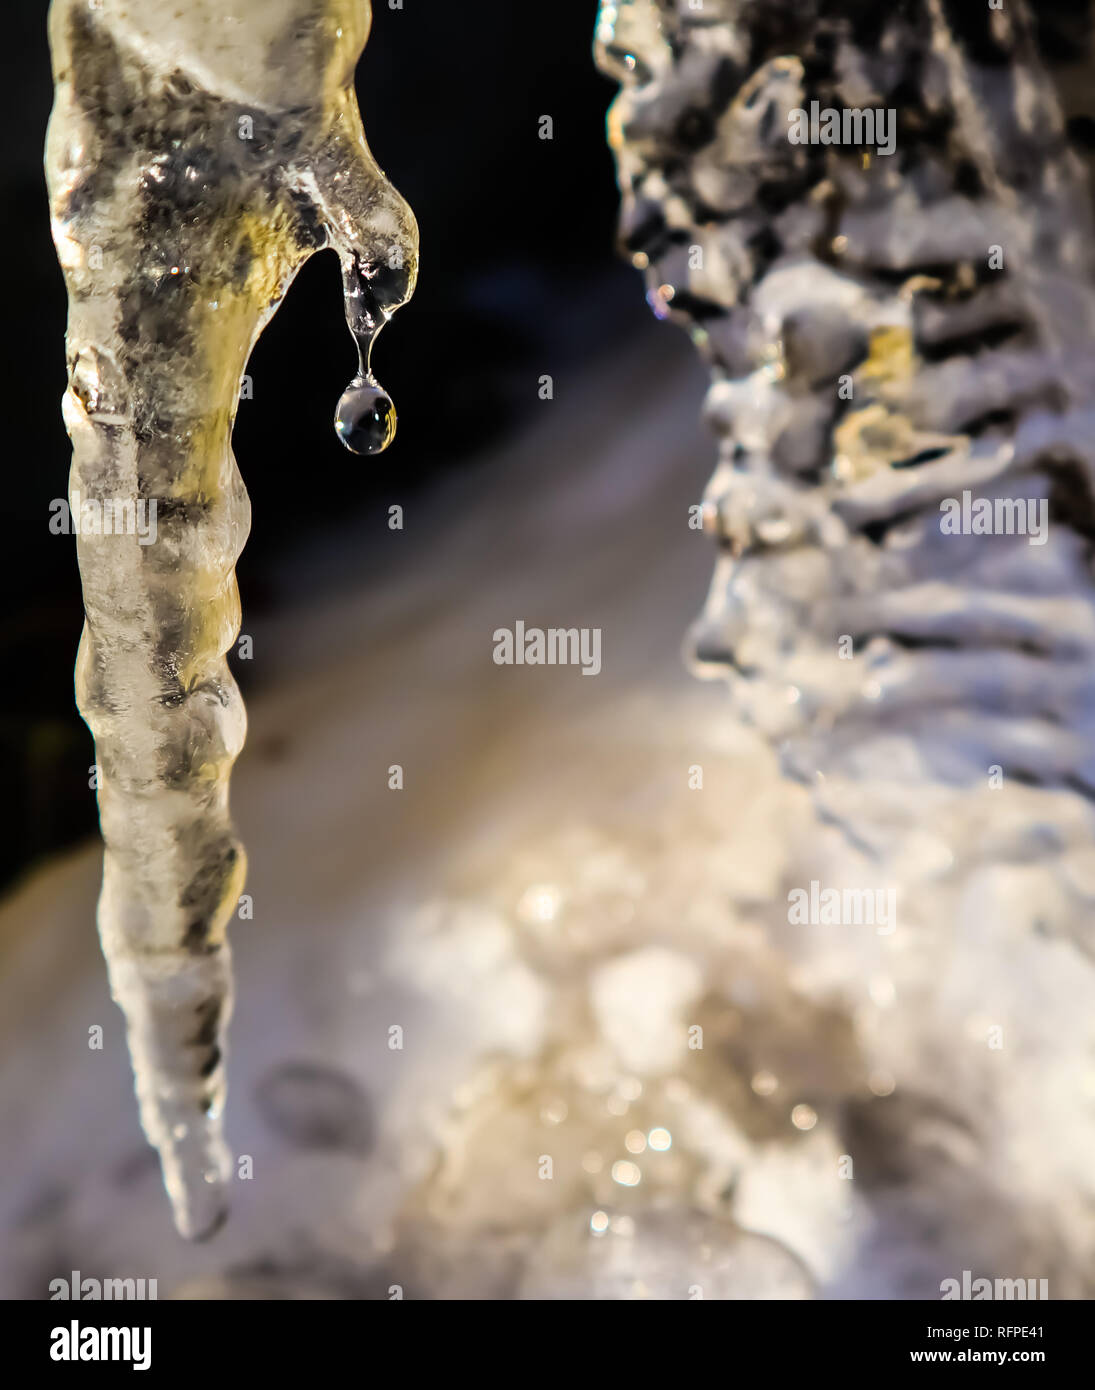 Shining goccia di acqua che cade da un ghiacciolo su sfondo nero Foto Stock